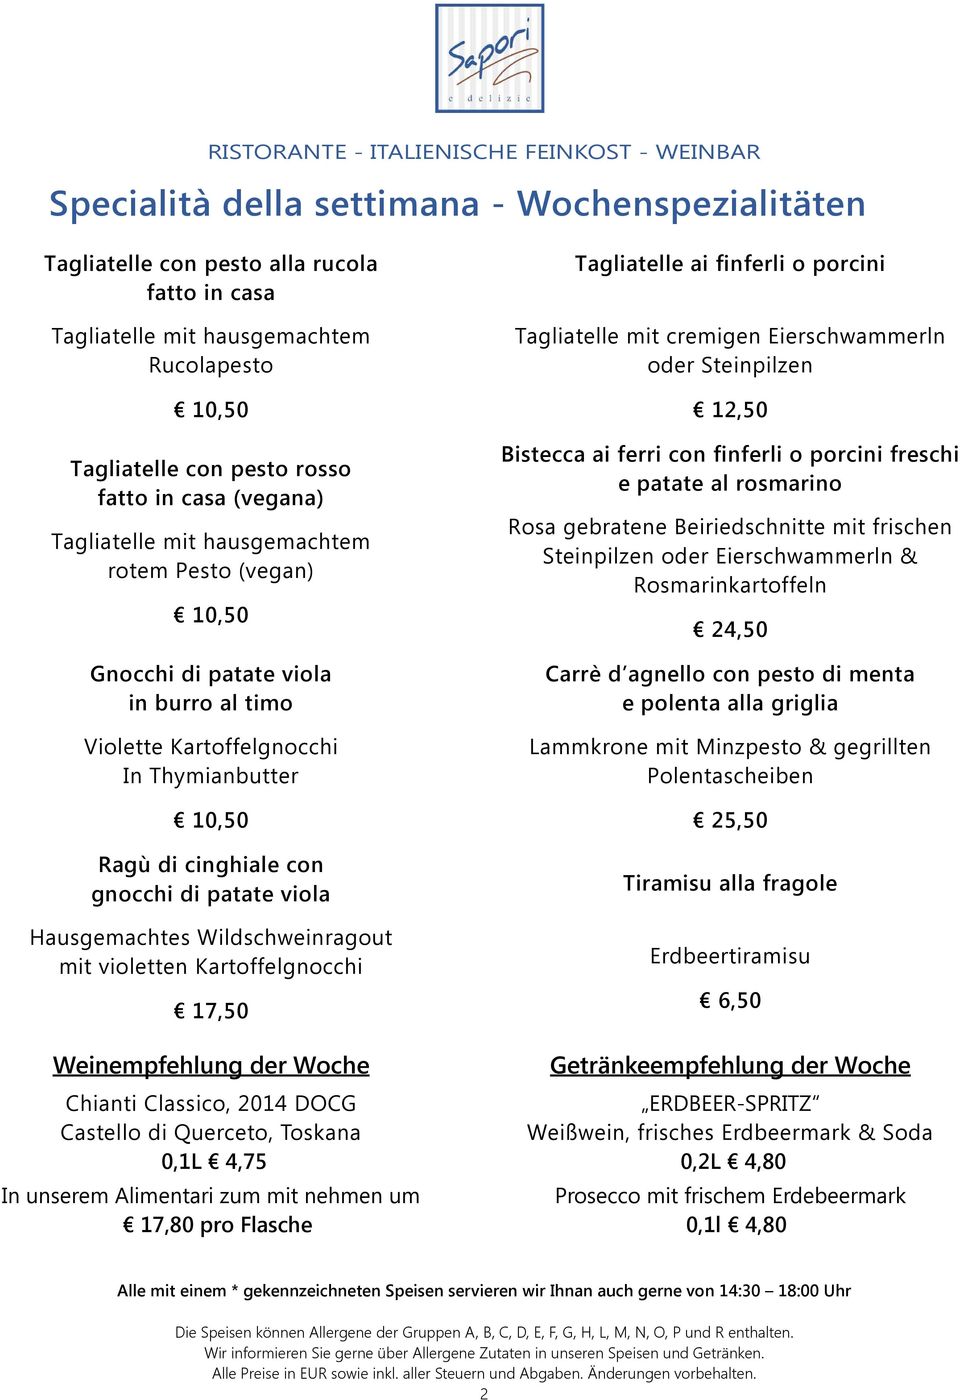 Hausgemachtes Wildschweinragout mit violetten Kartoffelgnocchi 17,50 Weinempfehlung der Woche Chianti Classico, 2014 DOCG Castello di Querceto, Toskana 0,1L 4,75 In unserem Alimentari zum mit nehmen